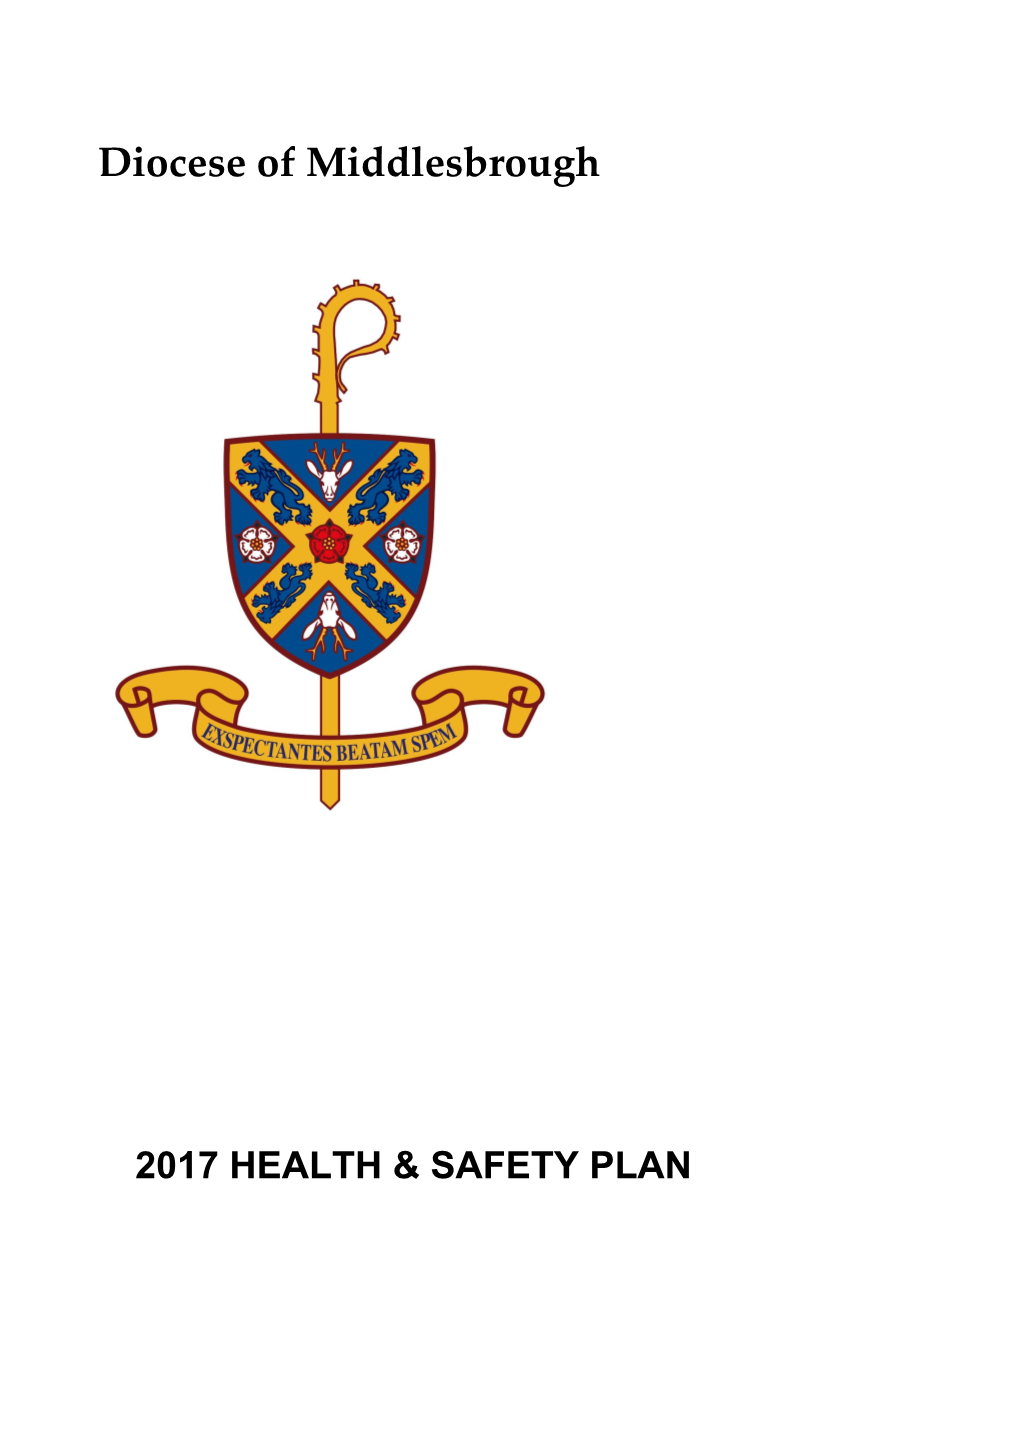 Health & Safety Plan